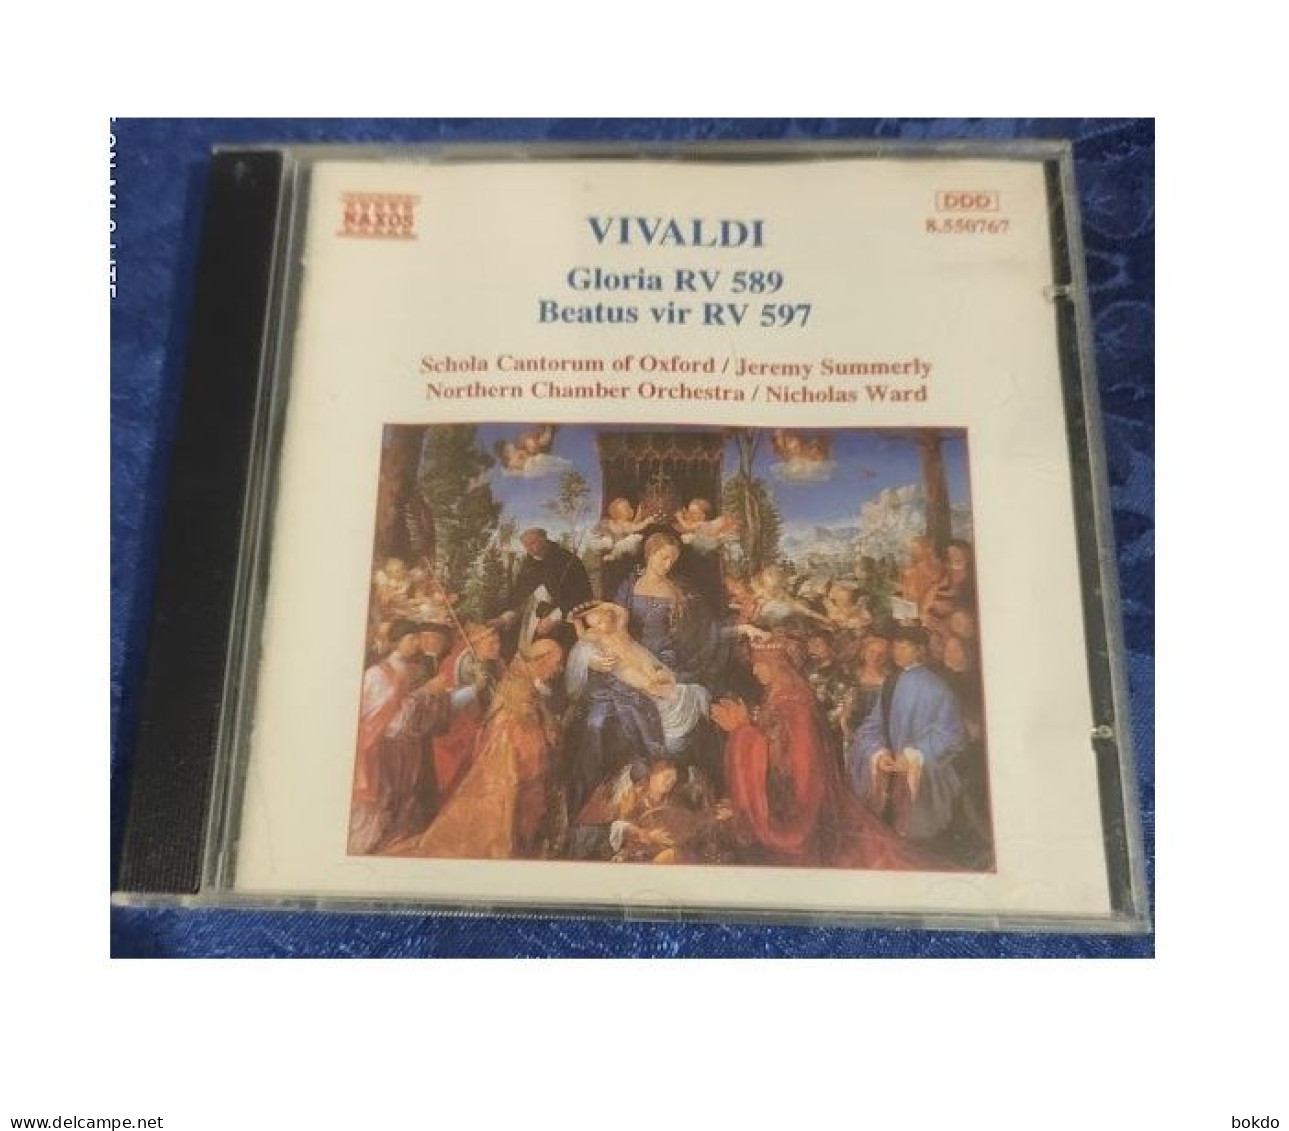 VIVALDI - Gloria RV 589 - Beatus RV 597 - Klassiekers